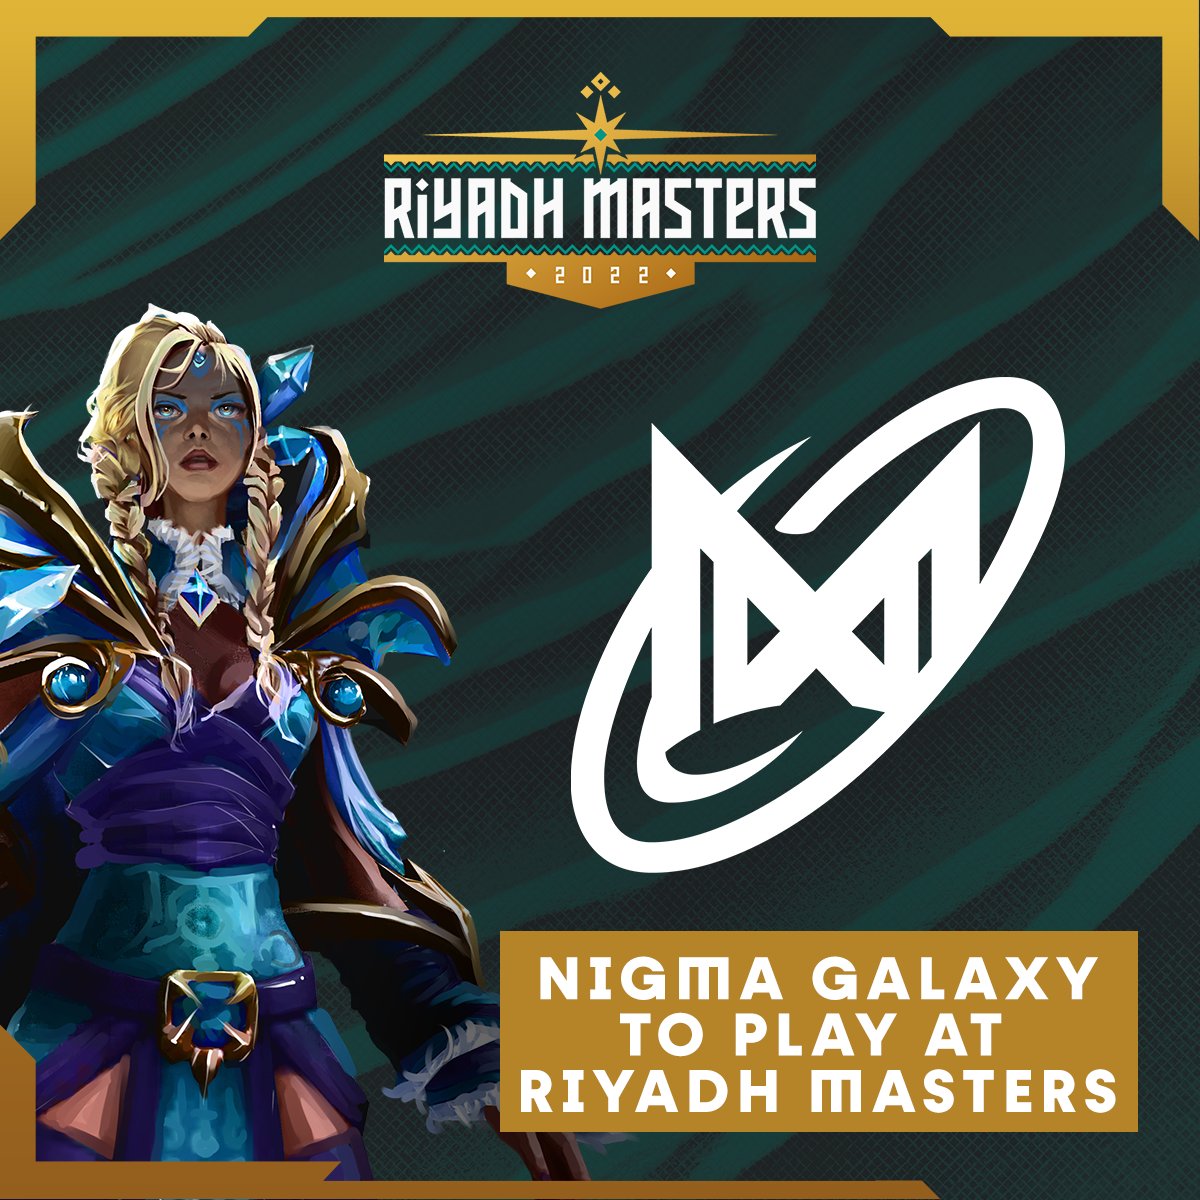 Nigma Galaxy выступит на LAN-турнире Riyadh Masters в Саудовской Аравии